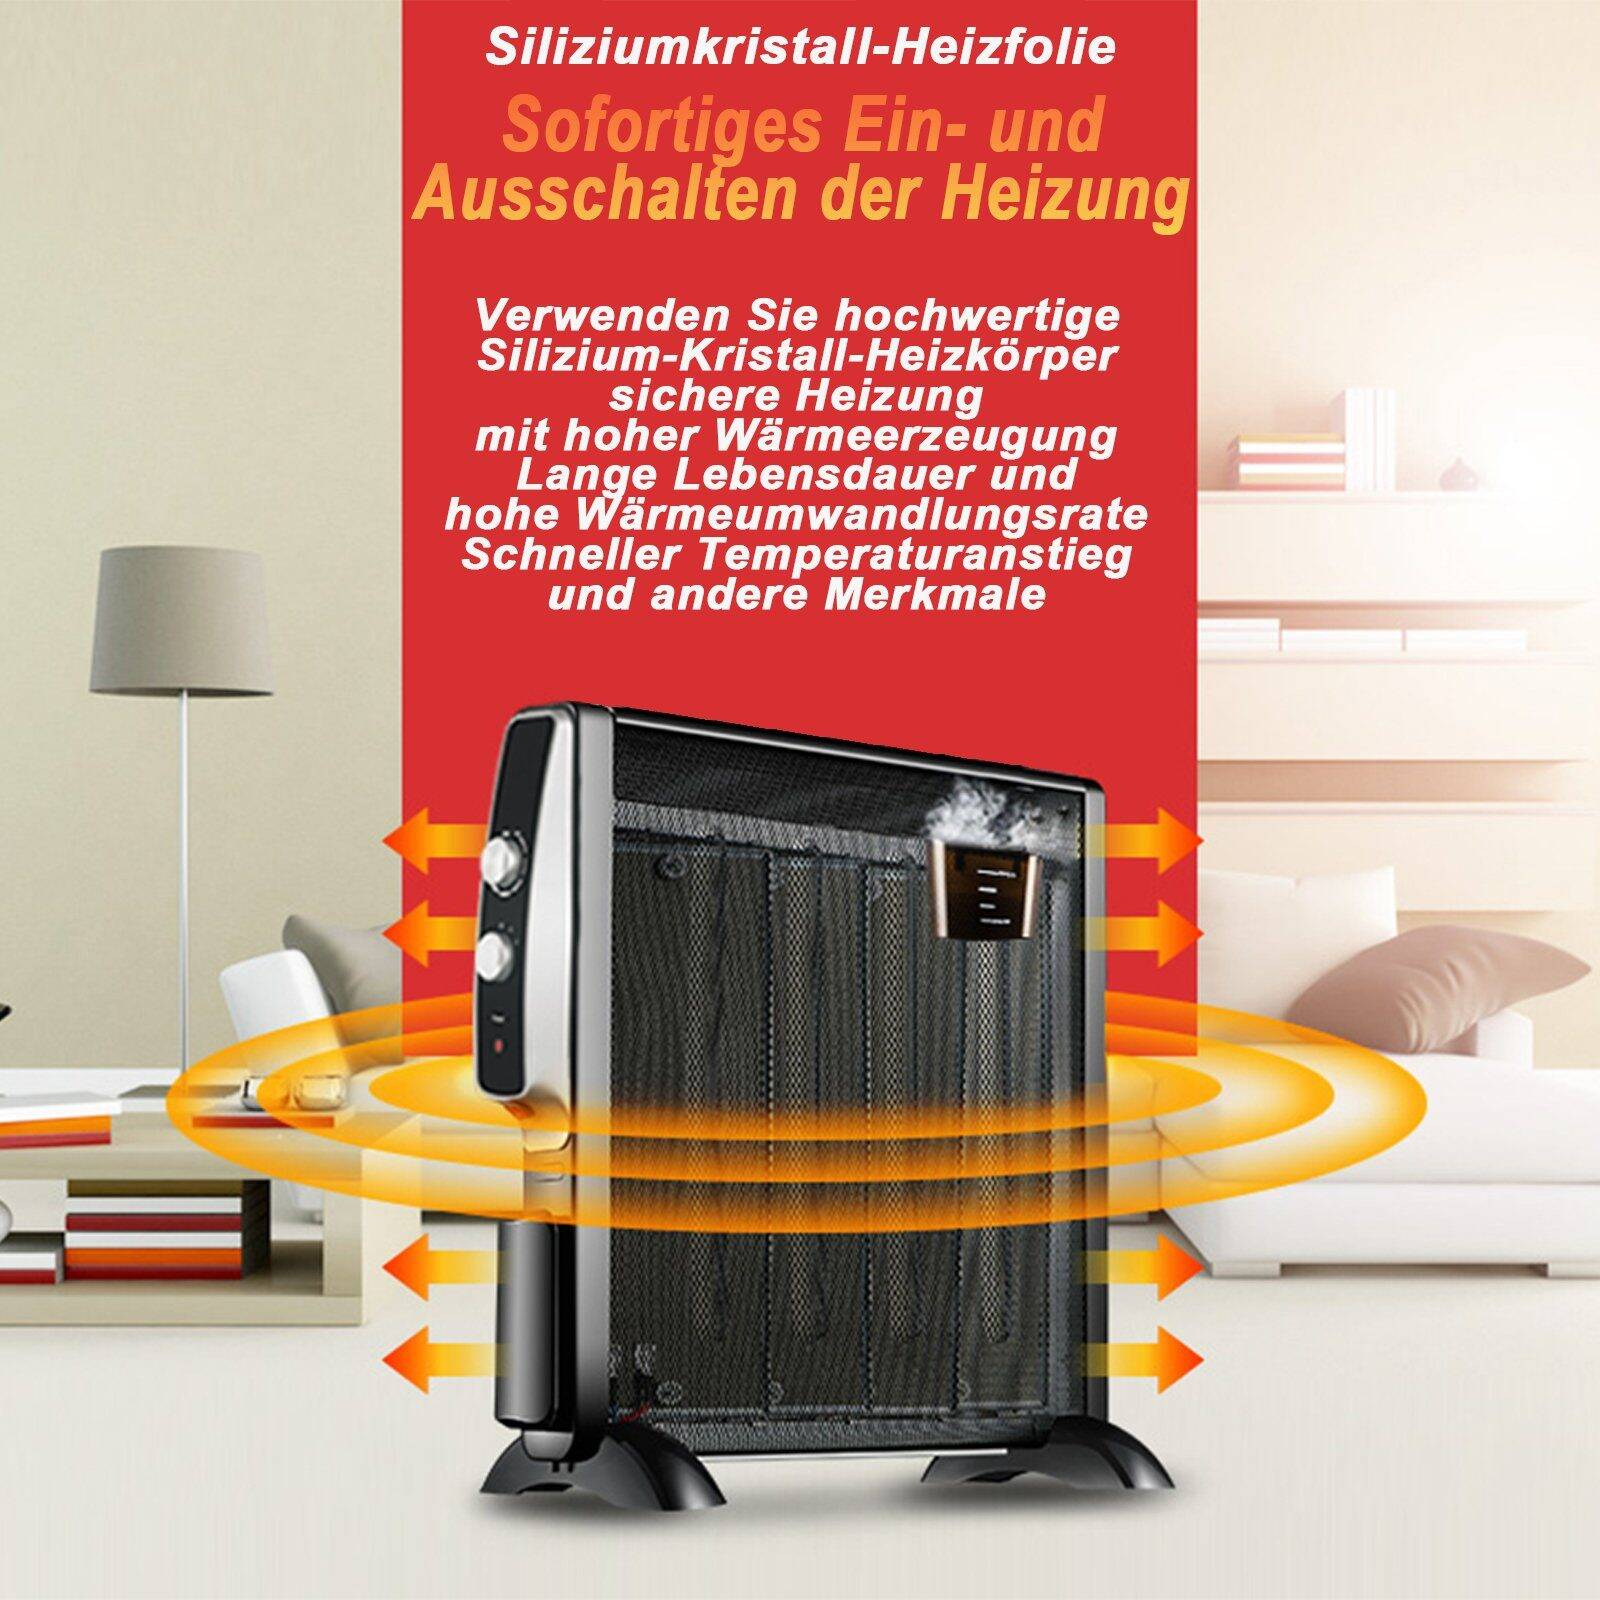 FINE LIFE Heizgerät und energieeffizient Watt) Thermostat,Sicher PRO 3 Heizung Heizstufen,2500W einstellbarer (2500